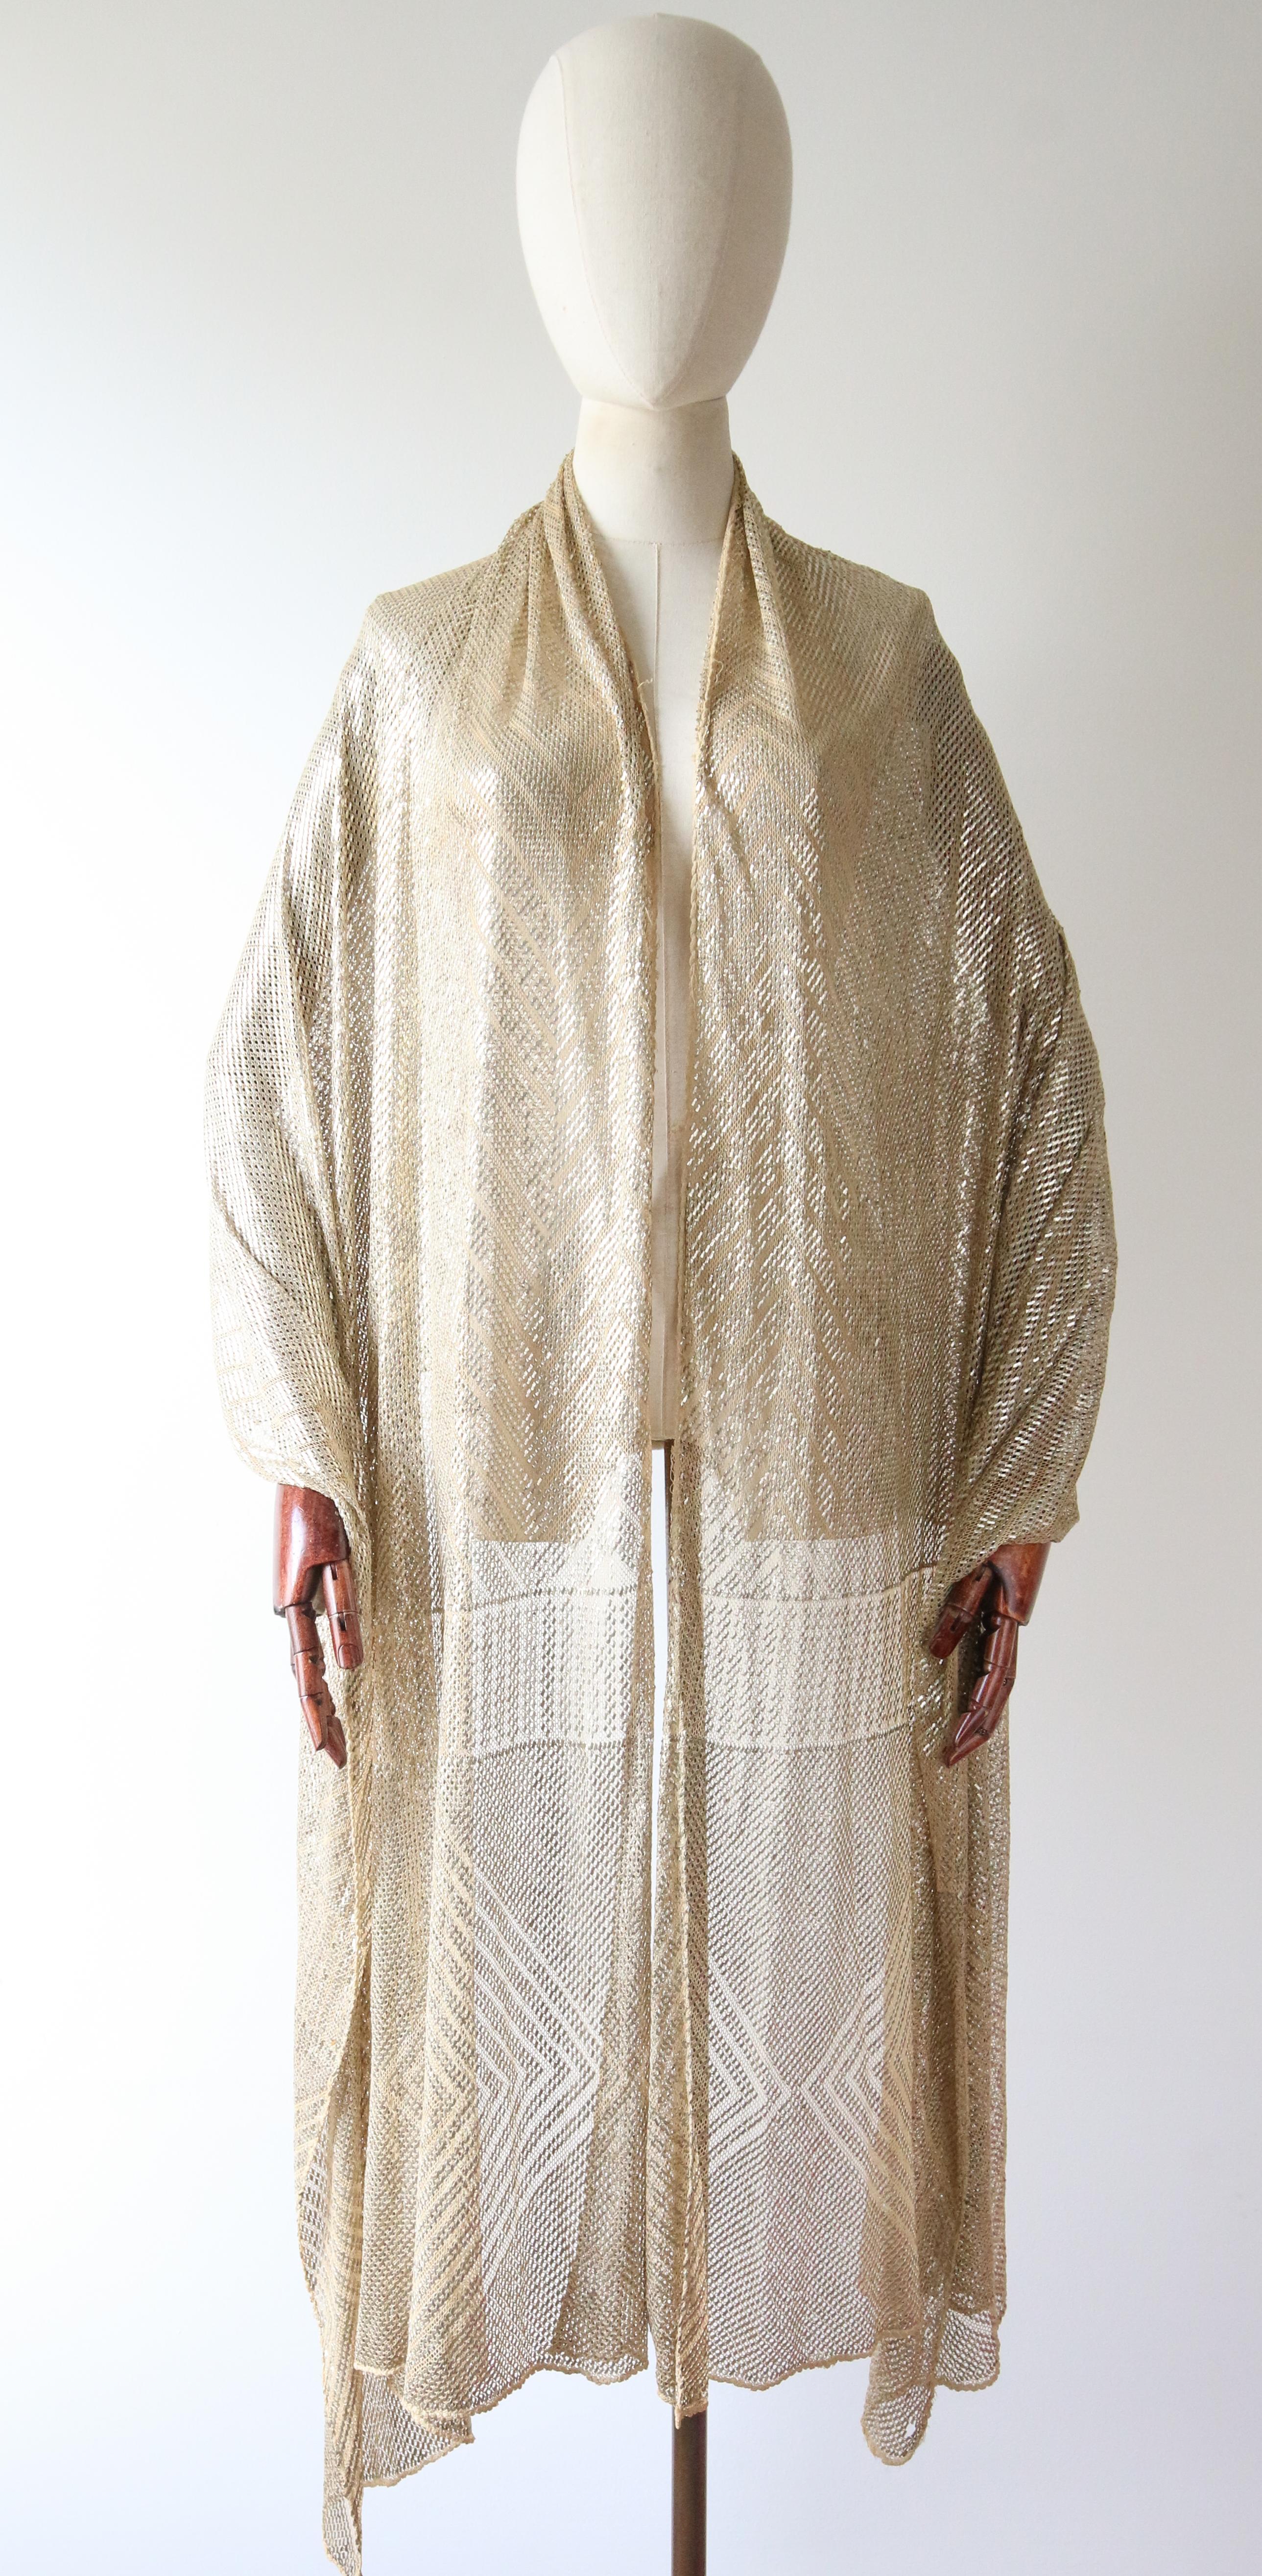 Dieser atemberaubende, cremefarbene Baumwoll-Assuit-Schal aus den 1920er Jahren, der an beiden Enden mit einem Gitter und einem geometrischen Rautenmuster versehen ist, ist ein Stück echte Modegeschichte.

Das wunderbare Gewicht des Schals lässt ihn